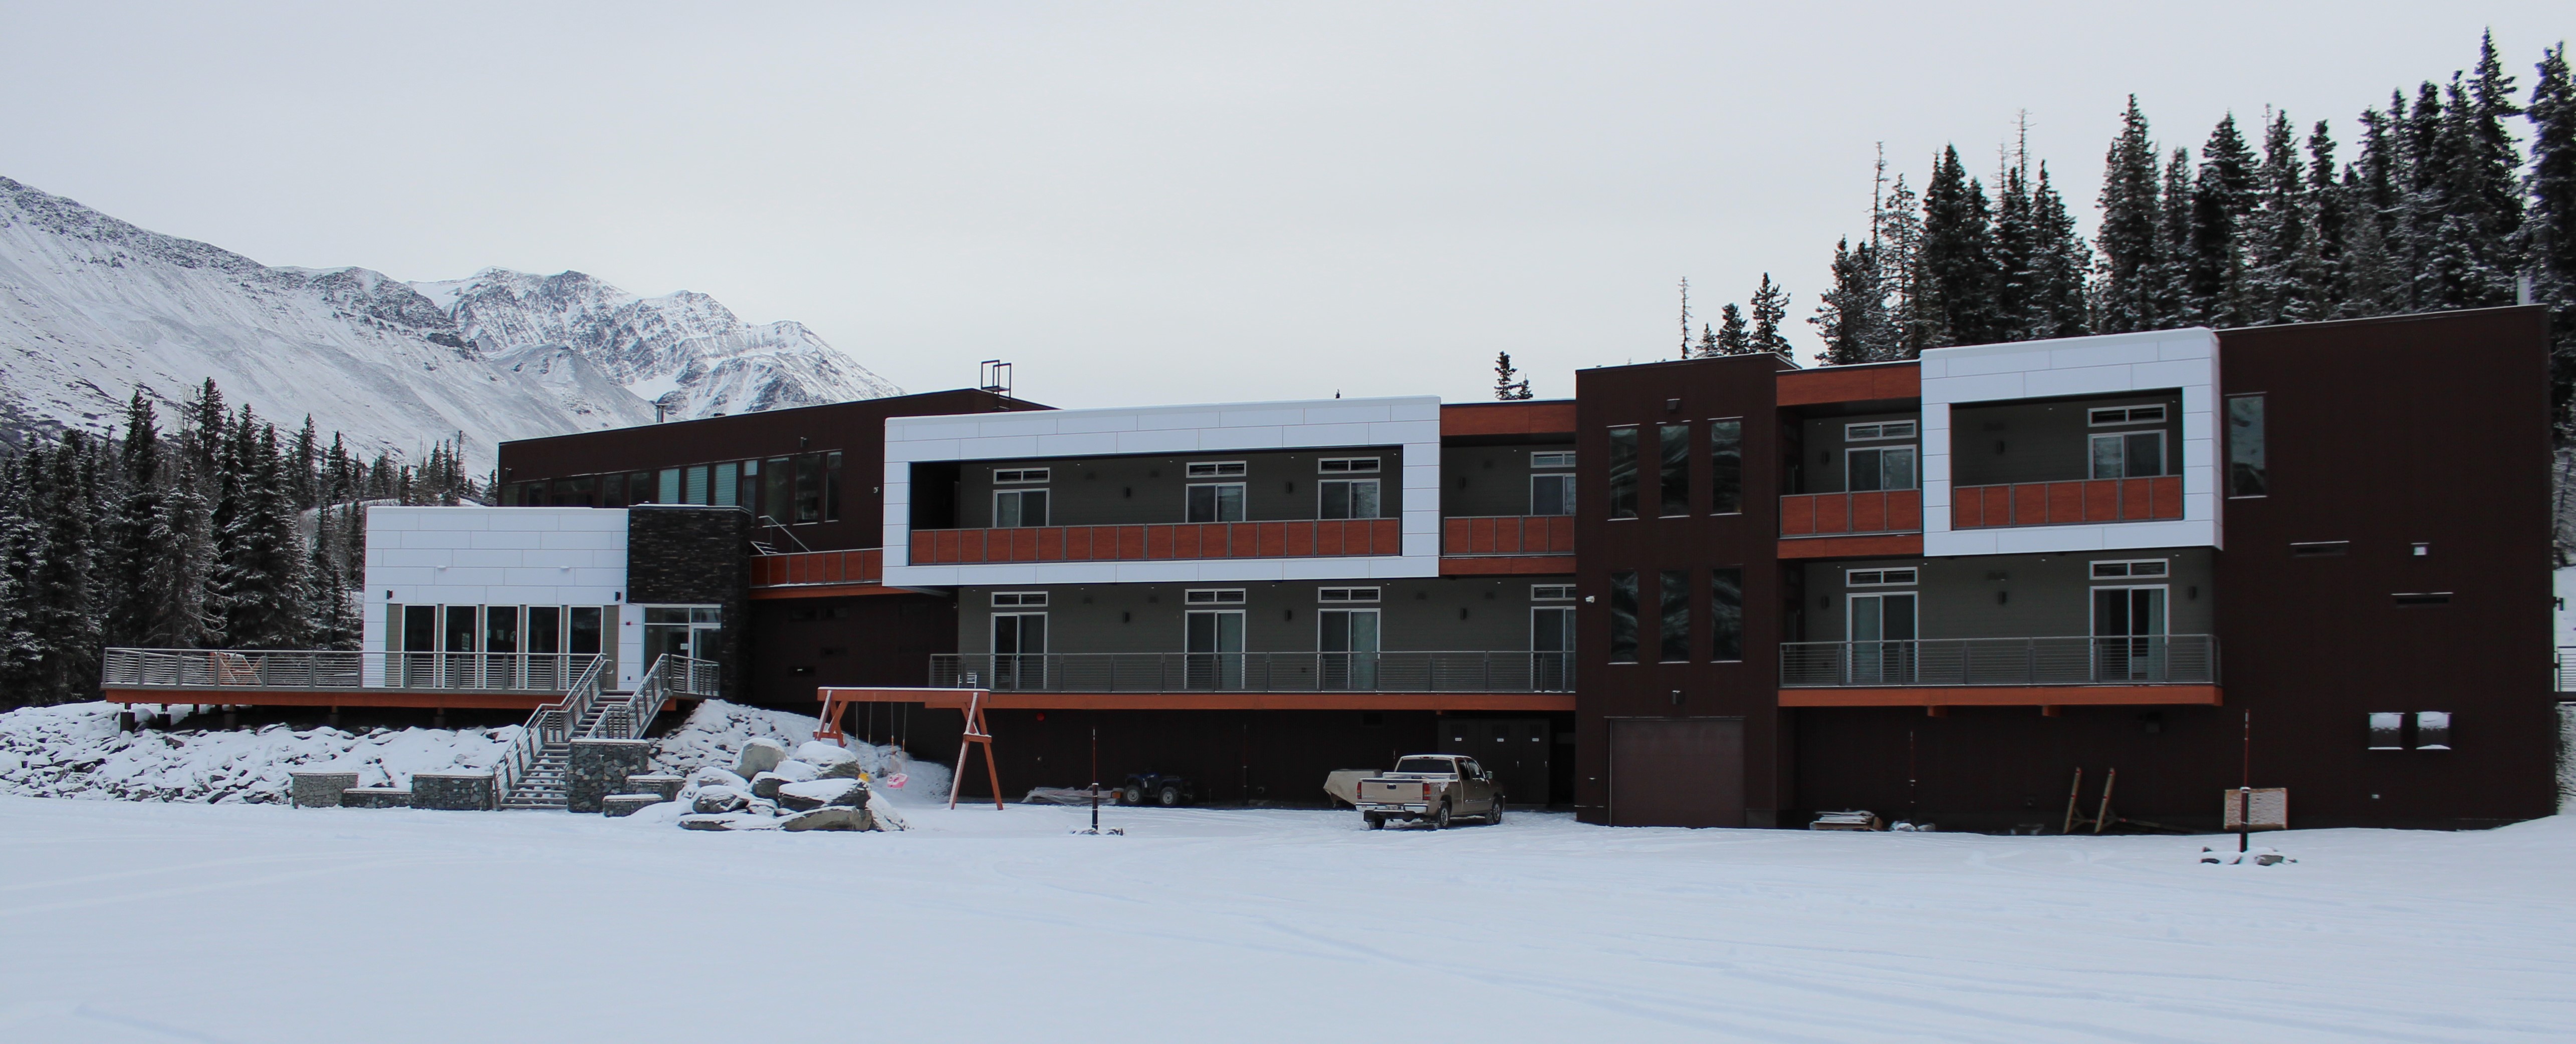 New Tsaina Lodge home of Valdez Heli Ski Guides in Valdez Alaska